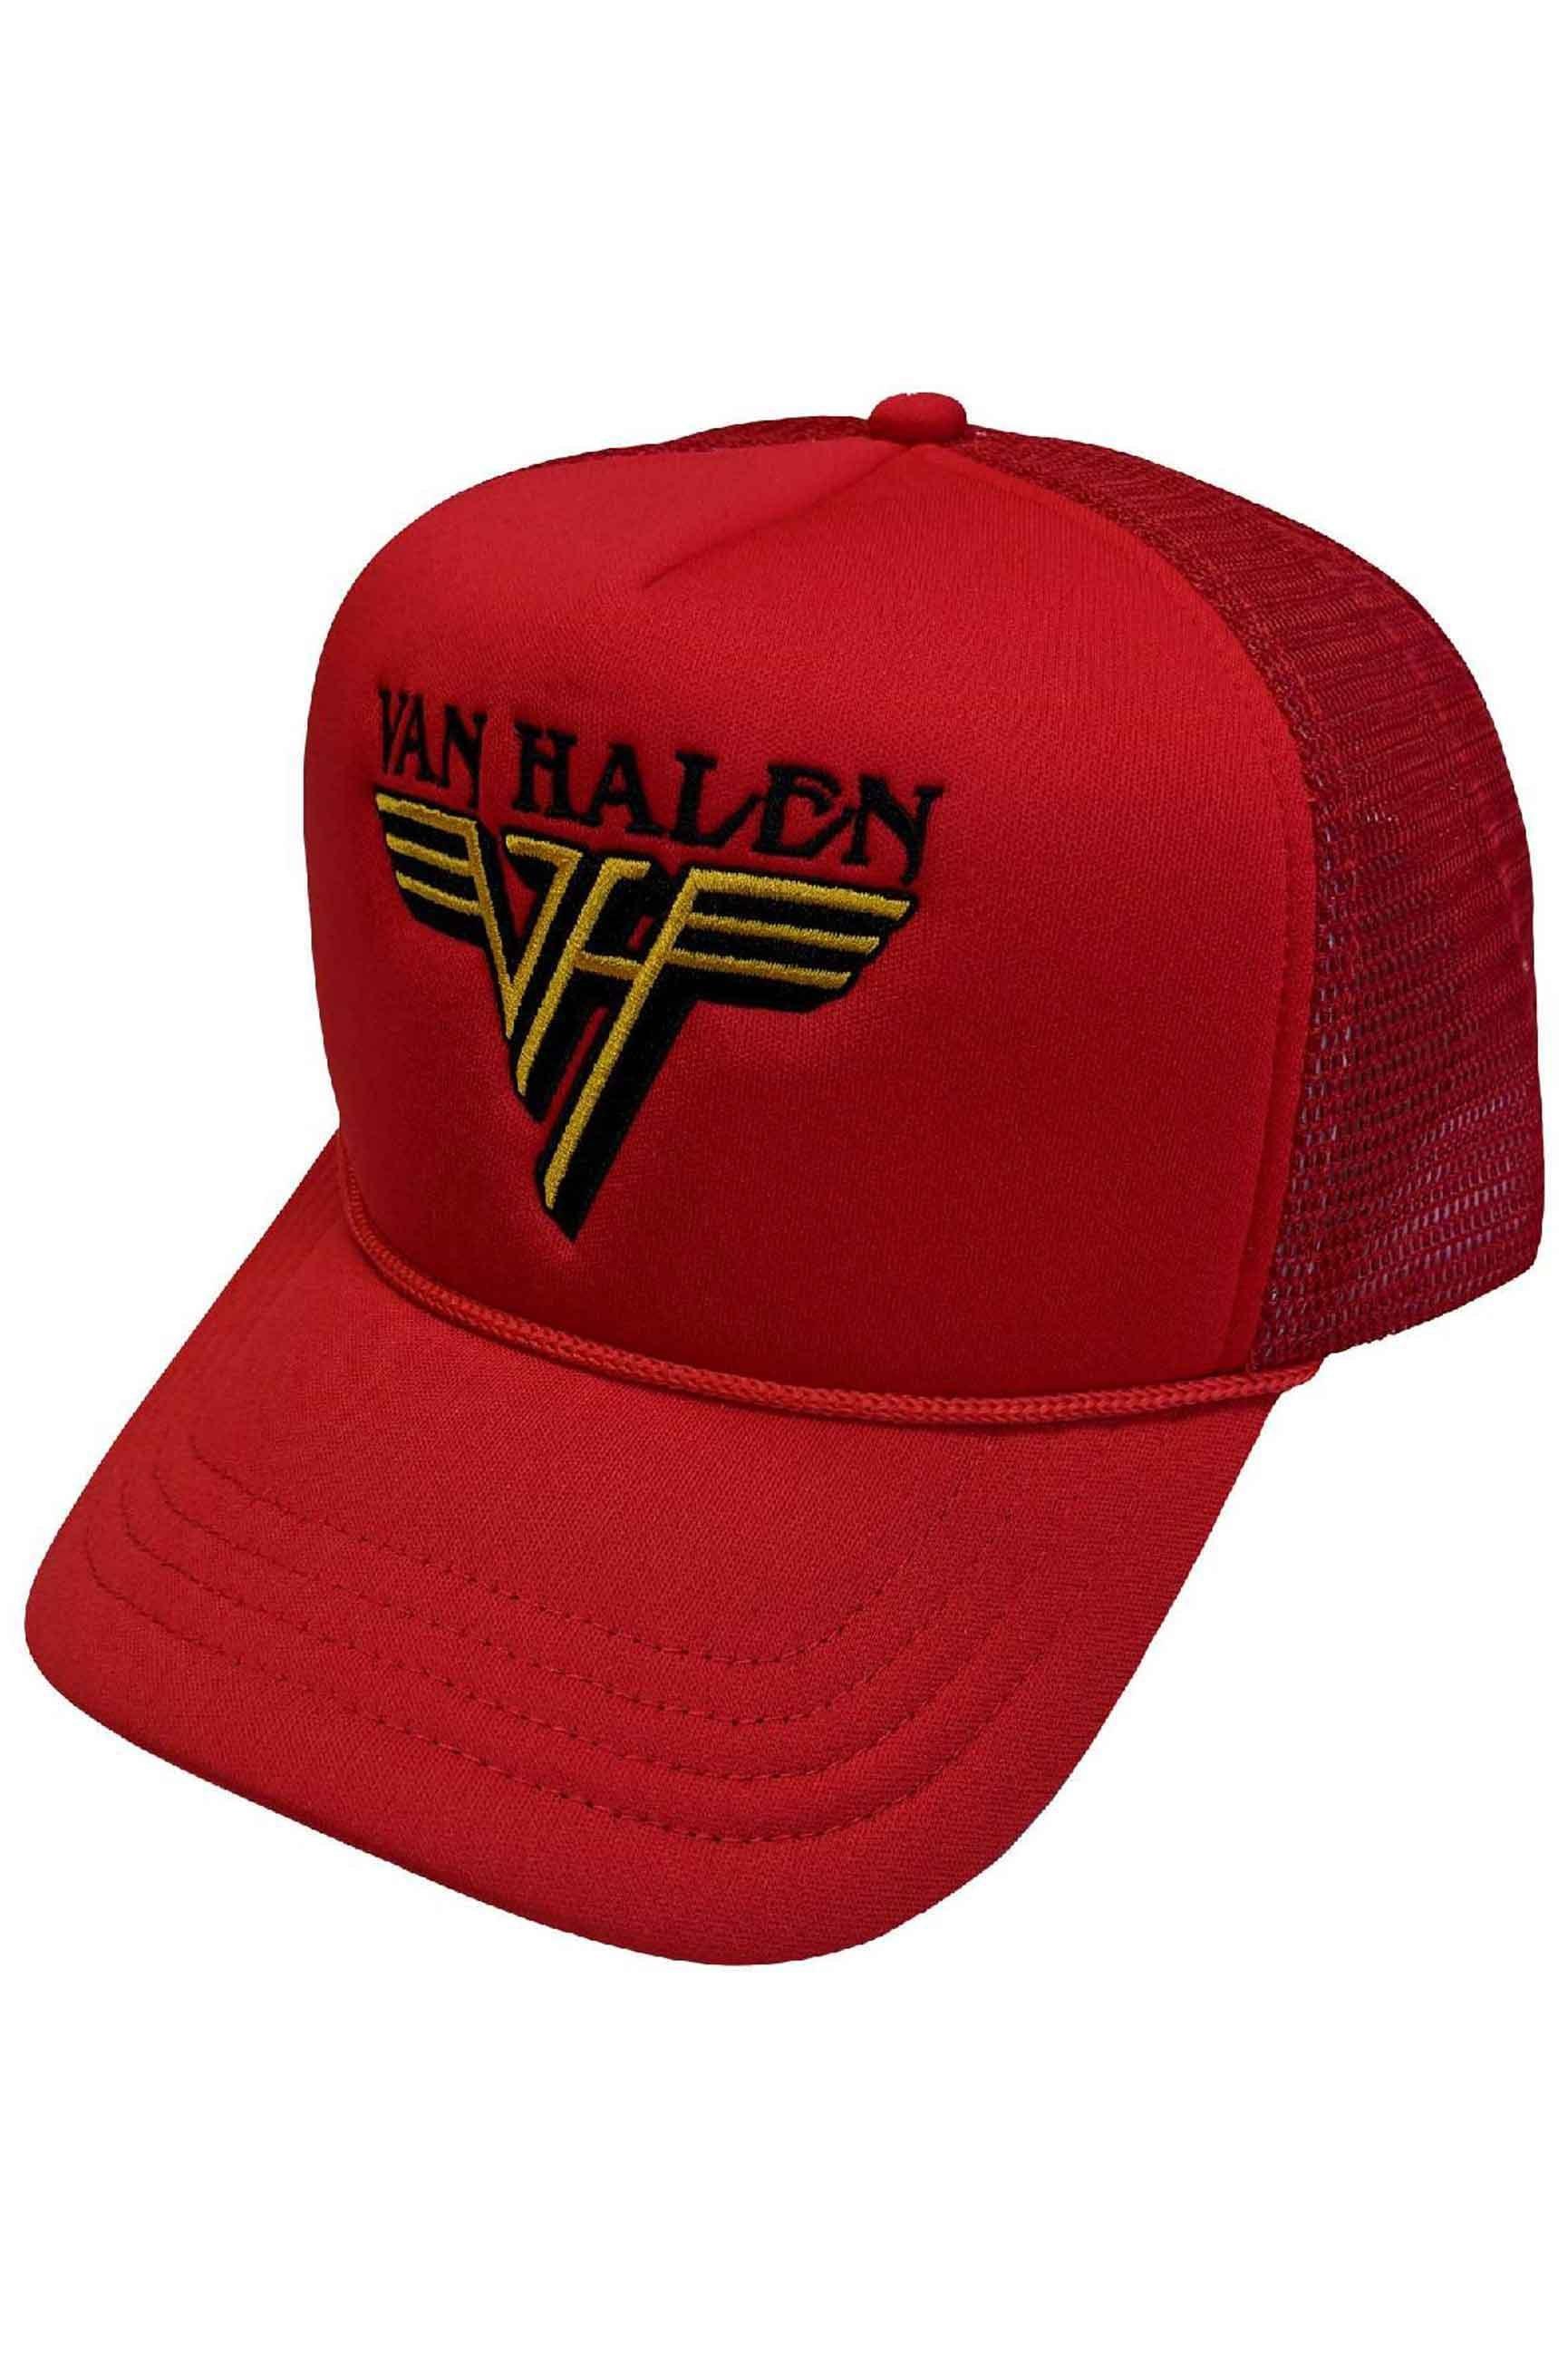 Бейсбольная кепка Trucker с текстовым ремешком и логотипом Van Halen, красный бокс сет van halen box the collection van halen 1978 1984 черный винил